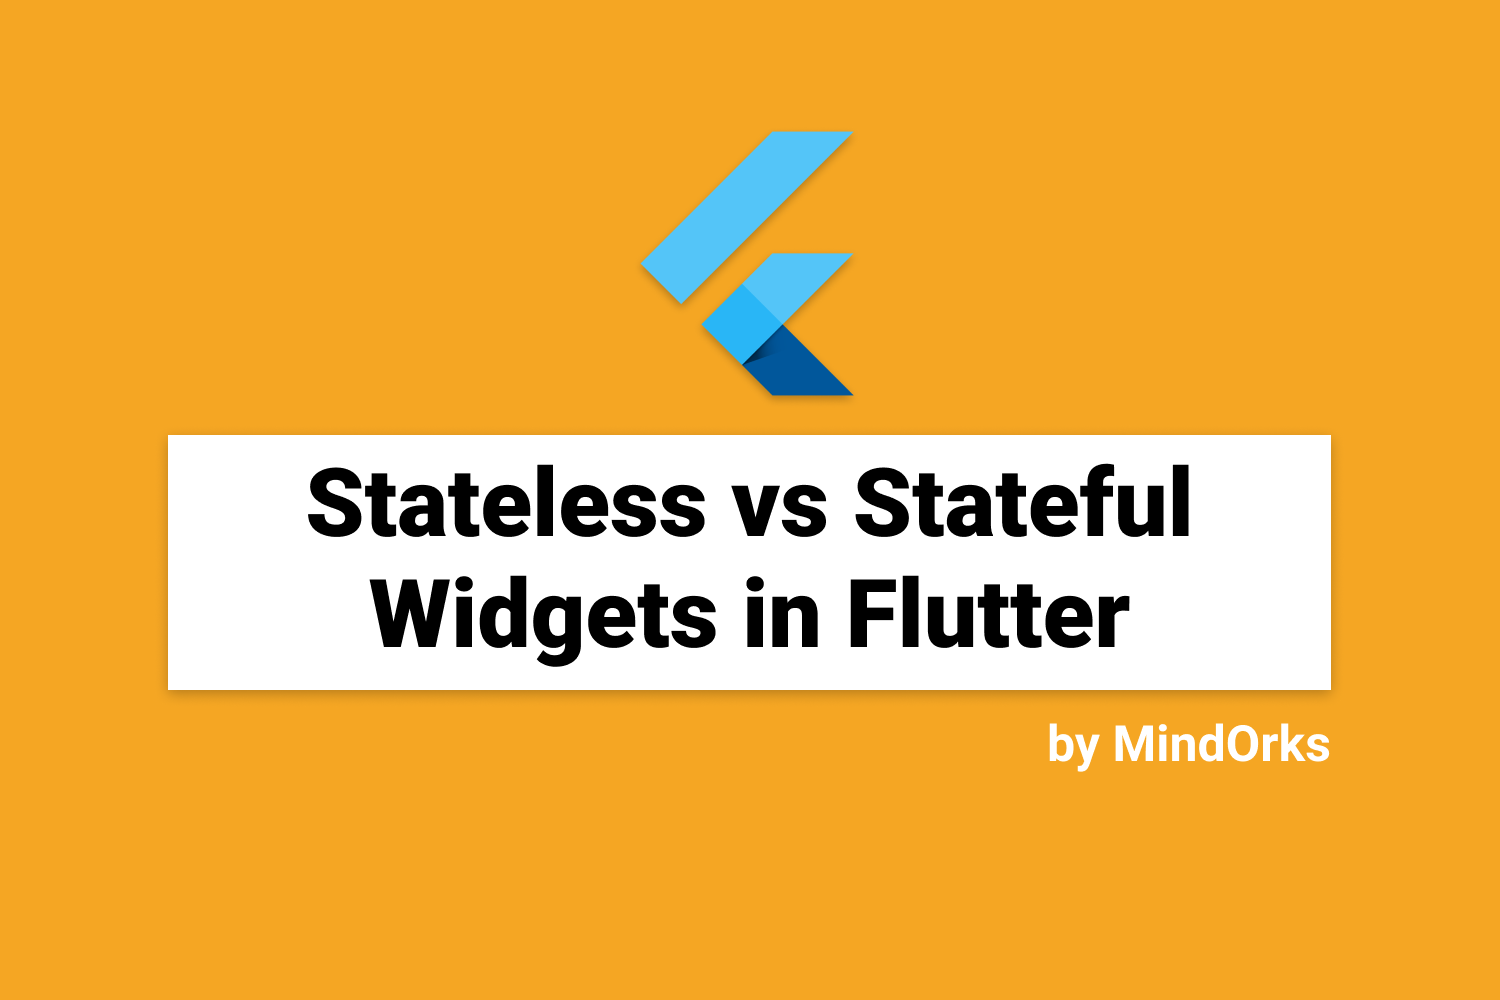 StatelessWidget vs StatefulWidget in Flutter